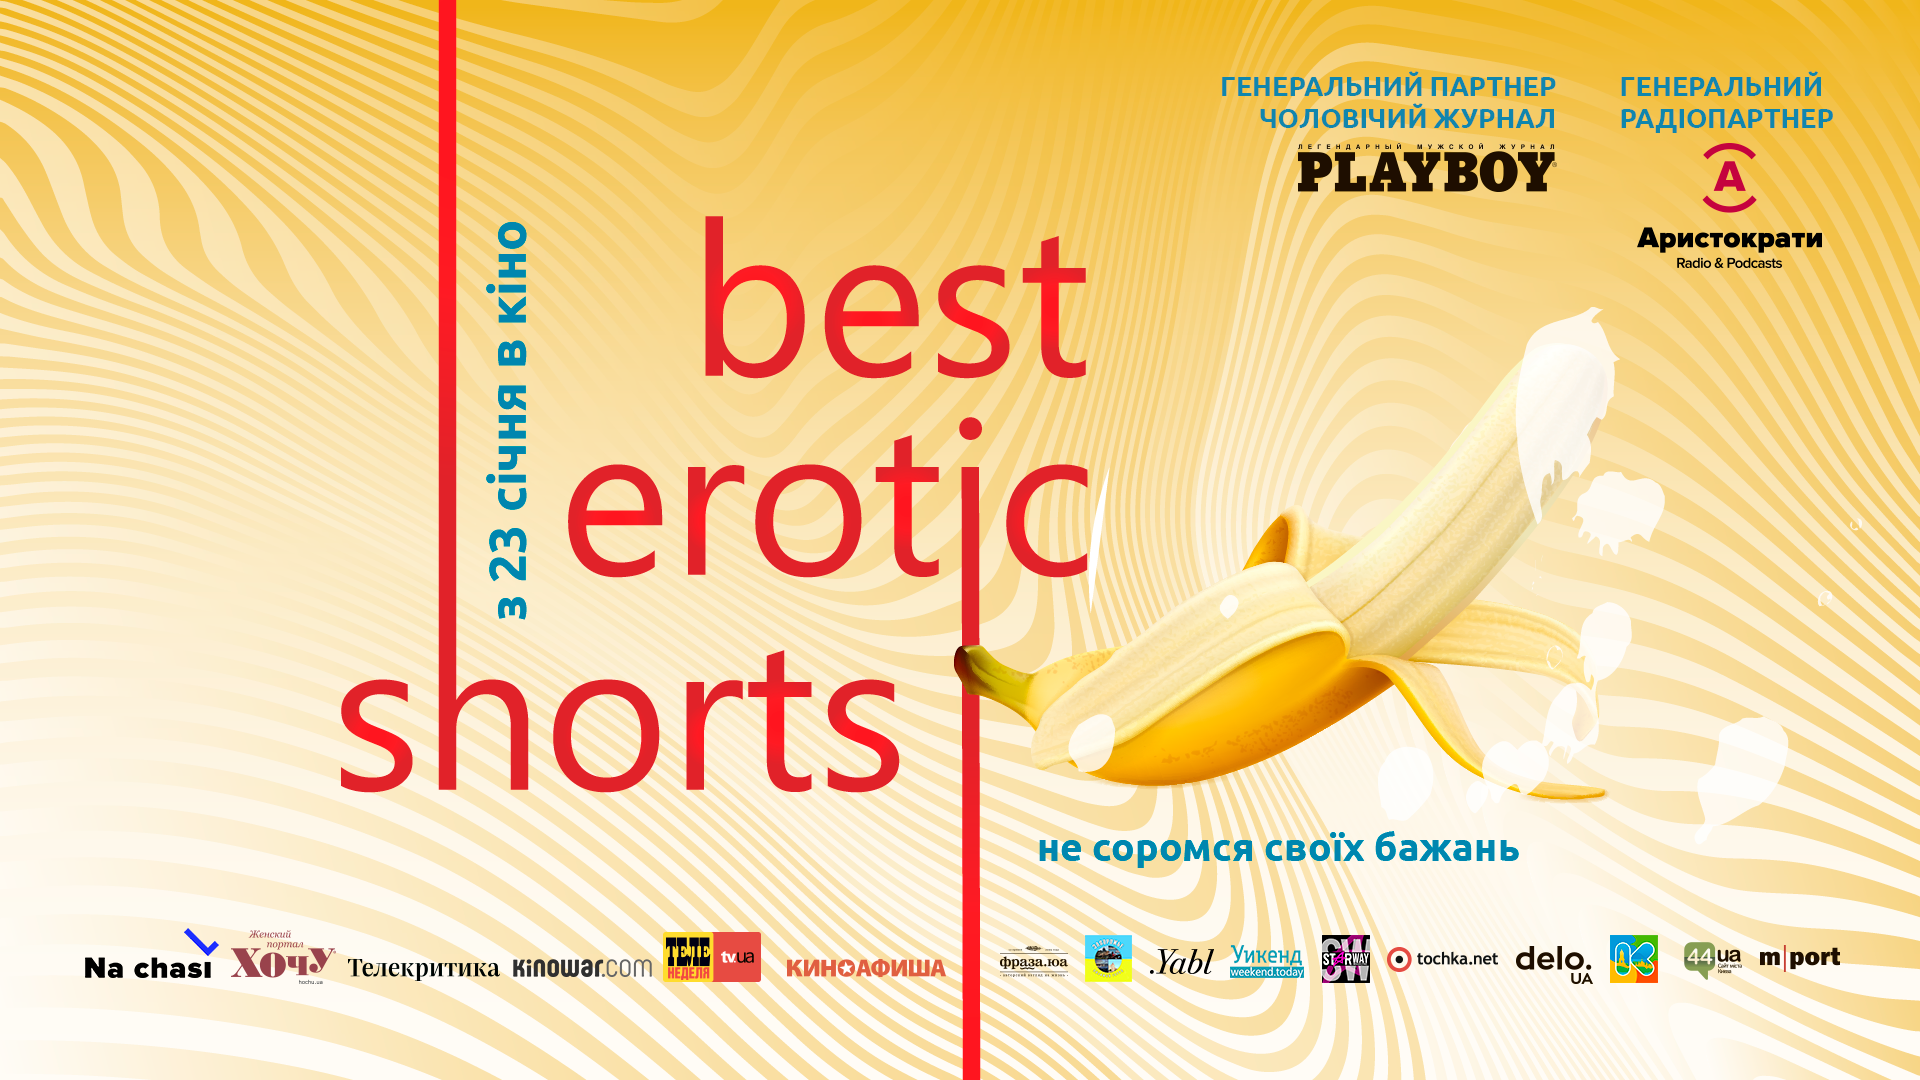 Best Erotic Shorts 